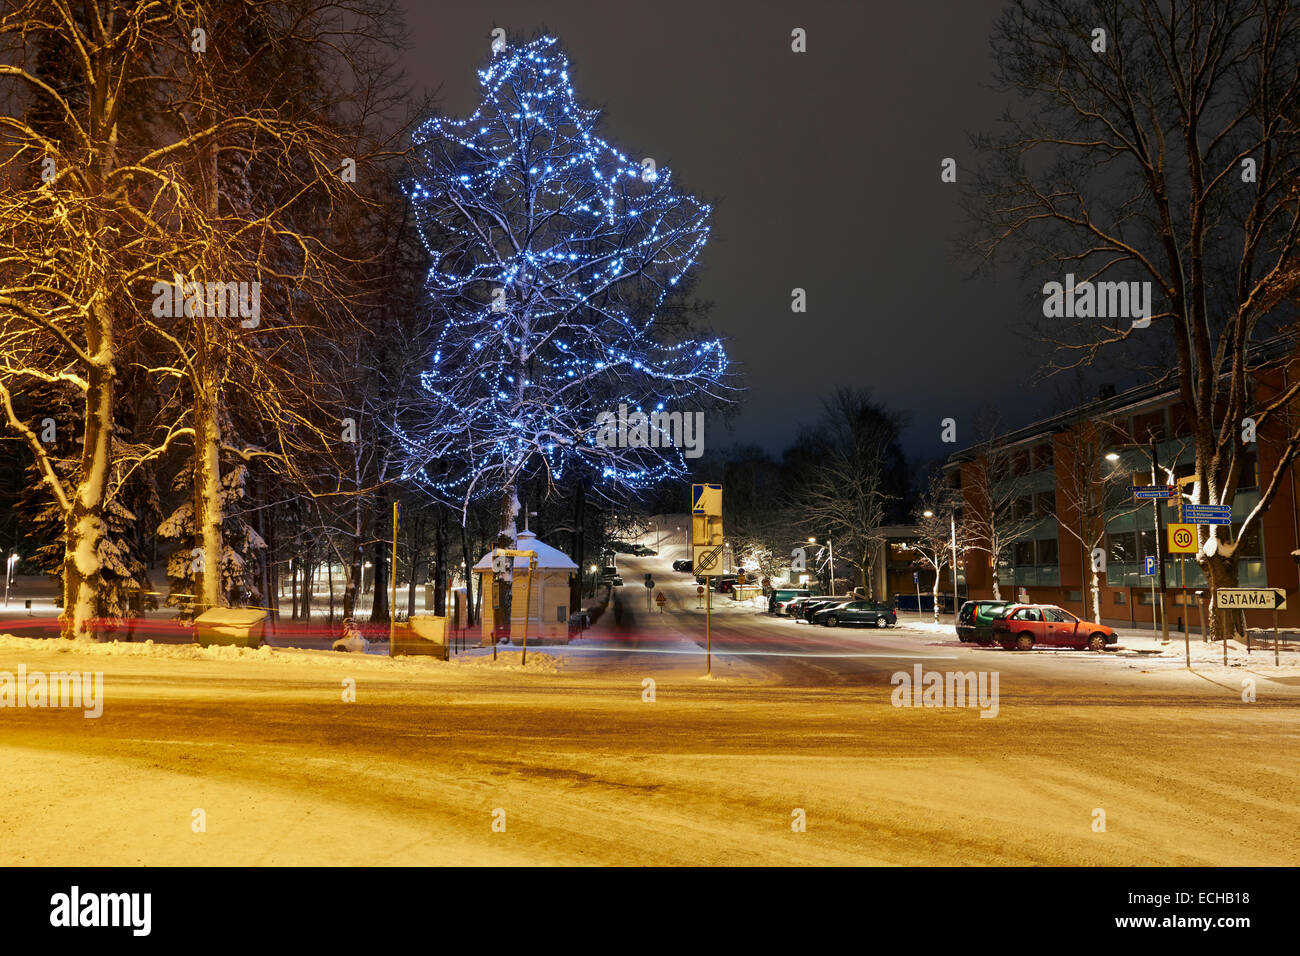 December scenery in Lappeenranta, Finland Stock Photo